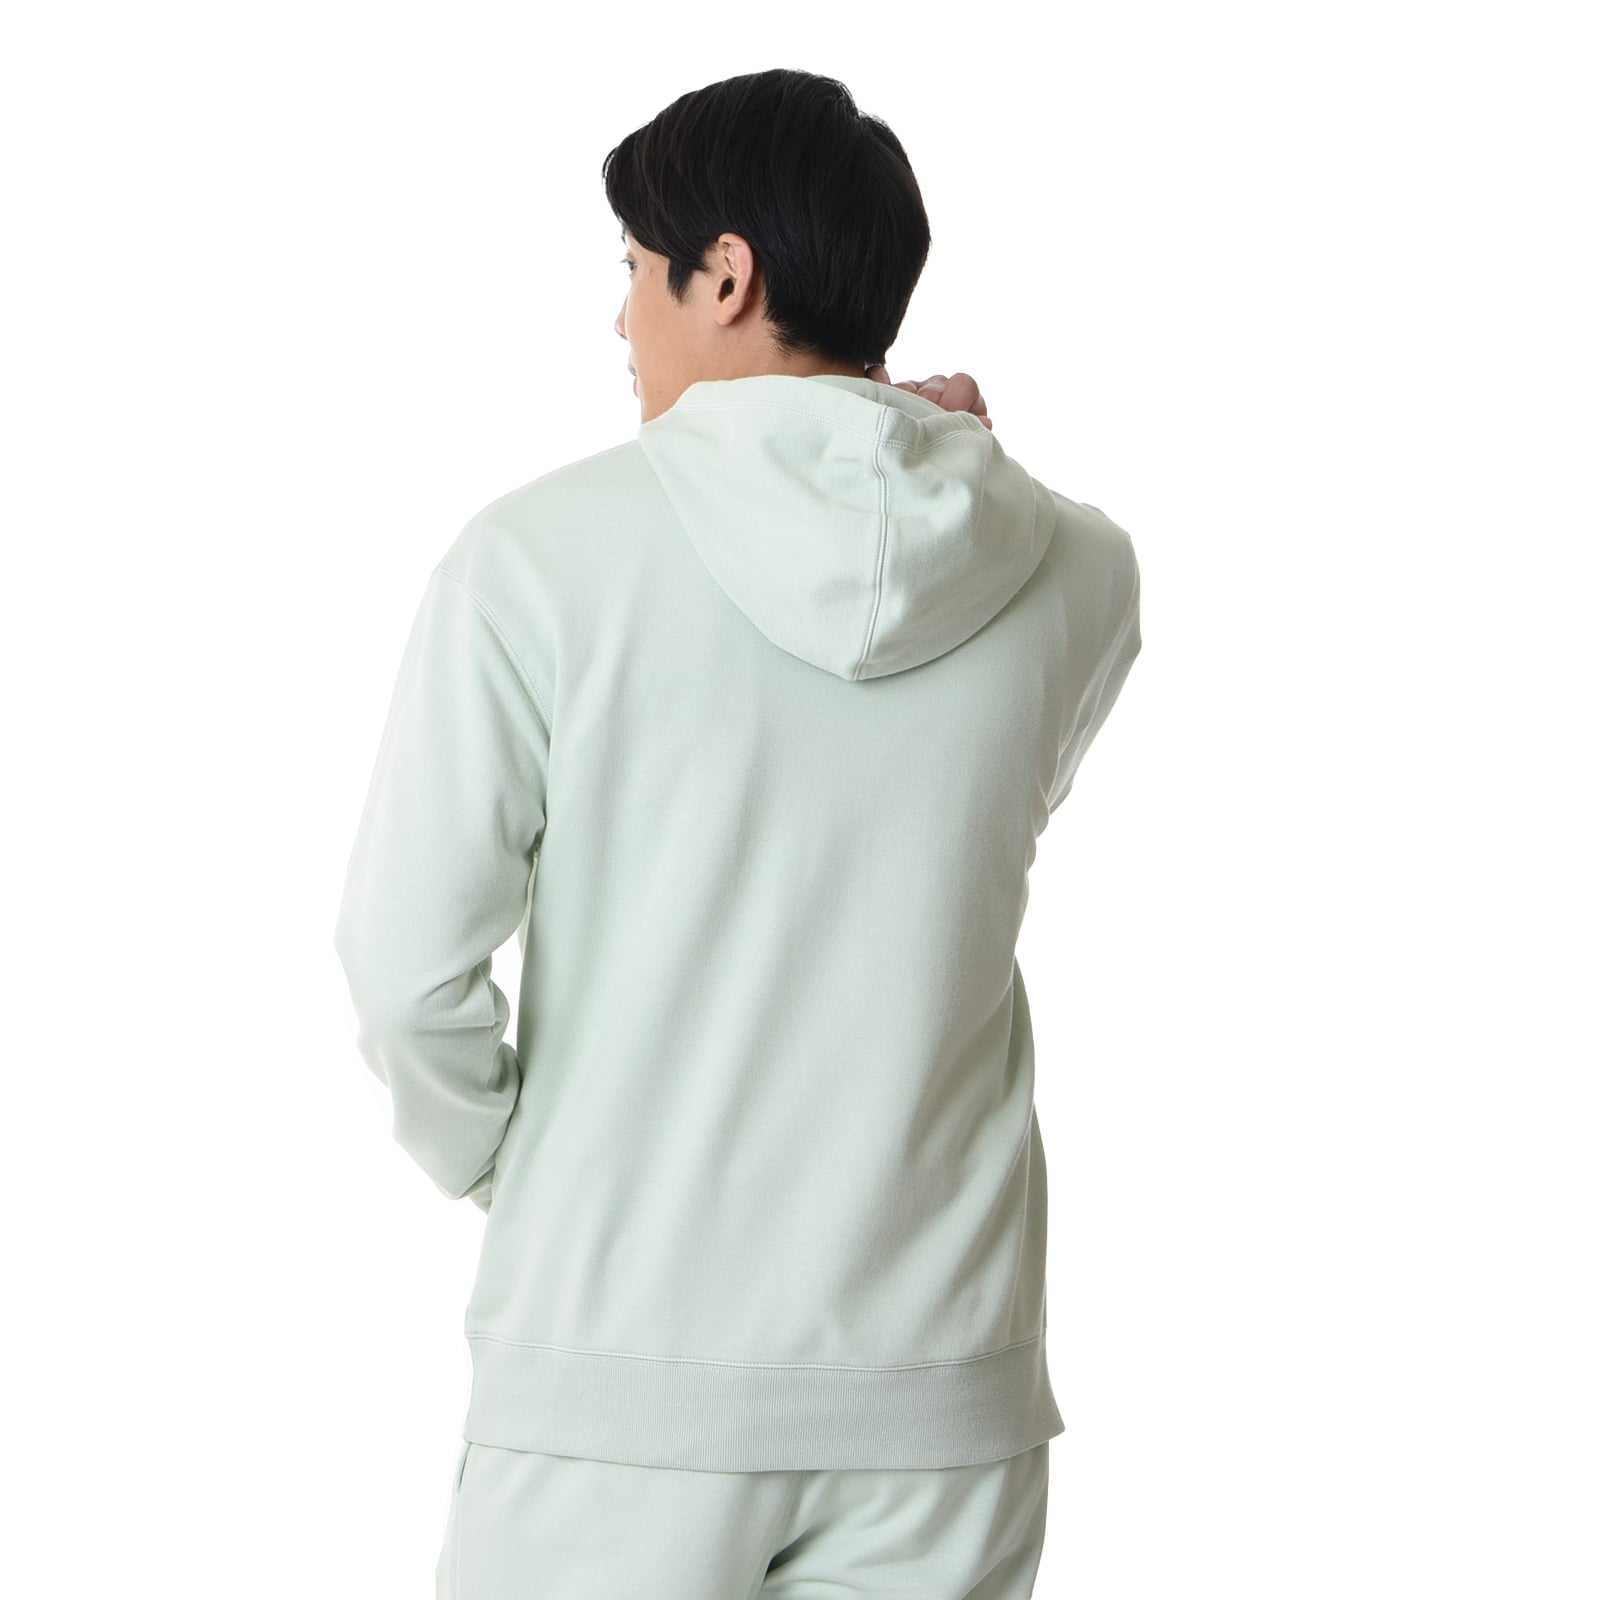 NB Essentials uni-ssentials sweatshirt pullover hoodie